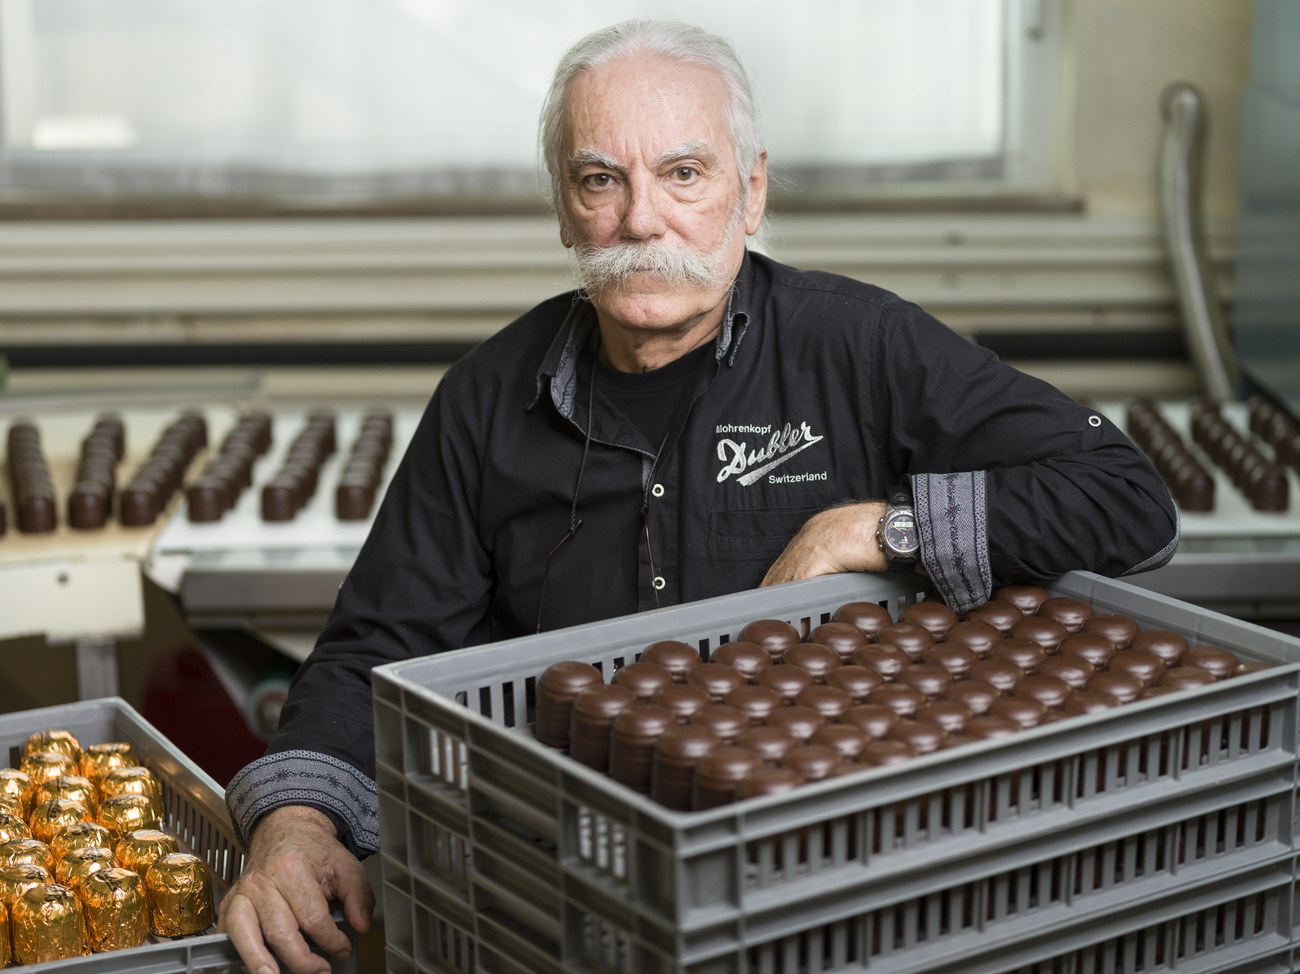 un uomo con una tuta da lavoro seduto in una fabbrica davanti a una cesta piena di moretti, dolciumi tipici svizzeri.